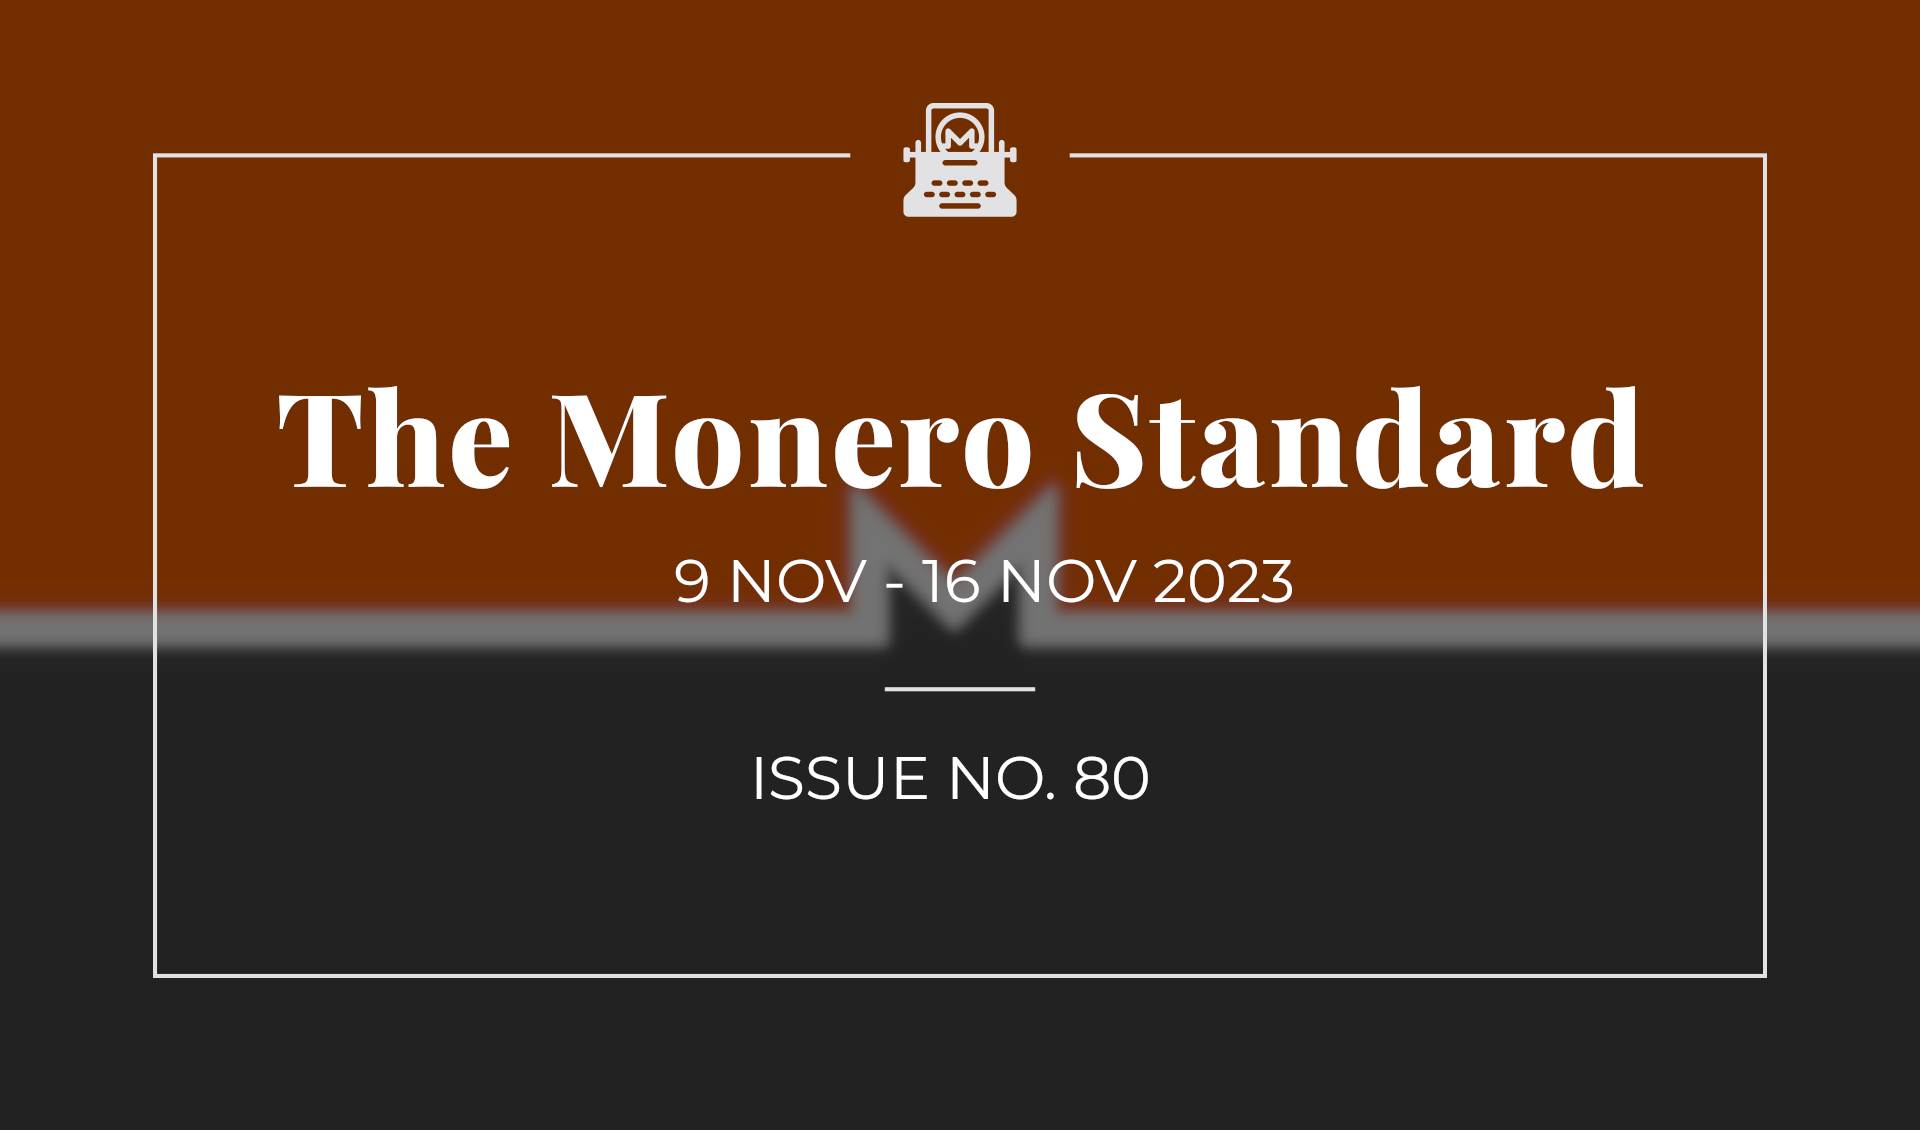 The Monero Standard #80: 9 Nov 2023 - 16 Nov 2023